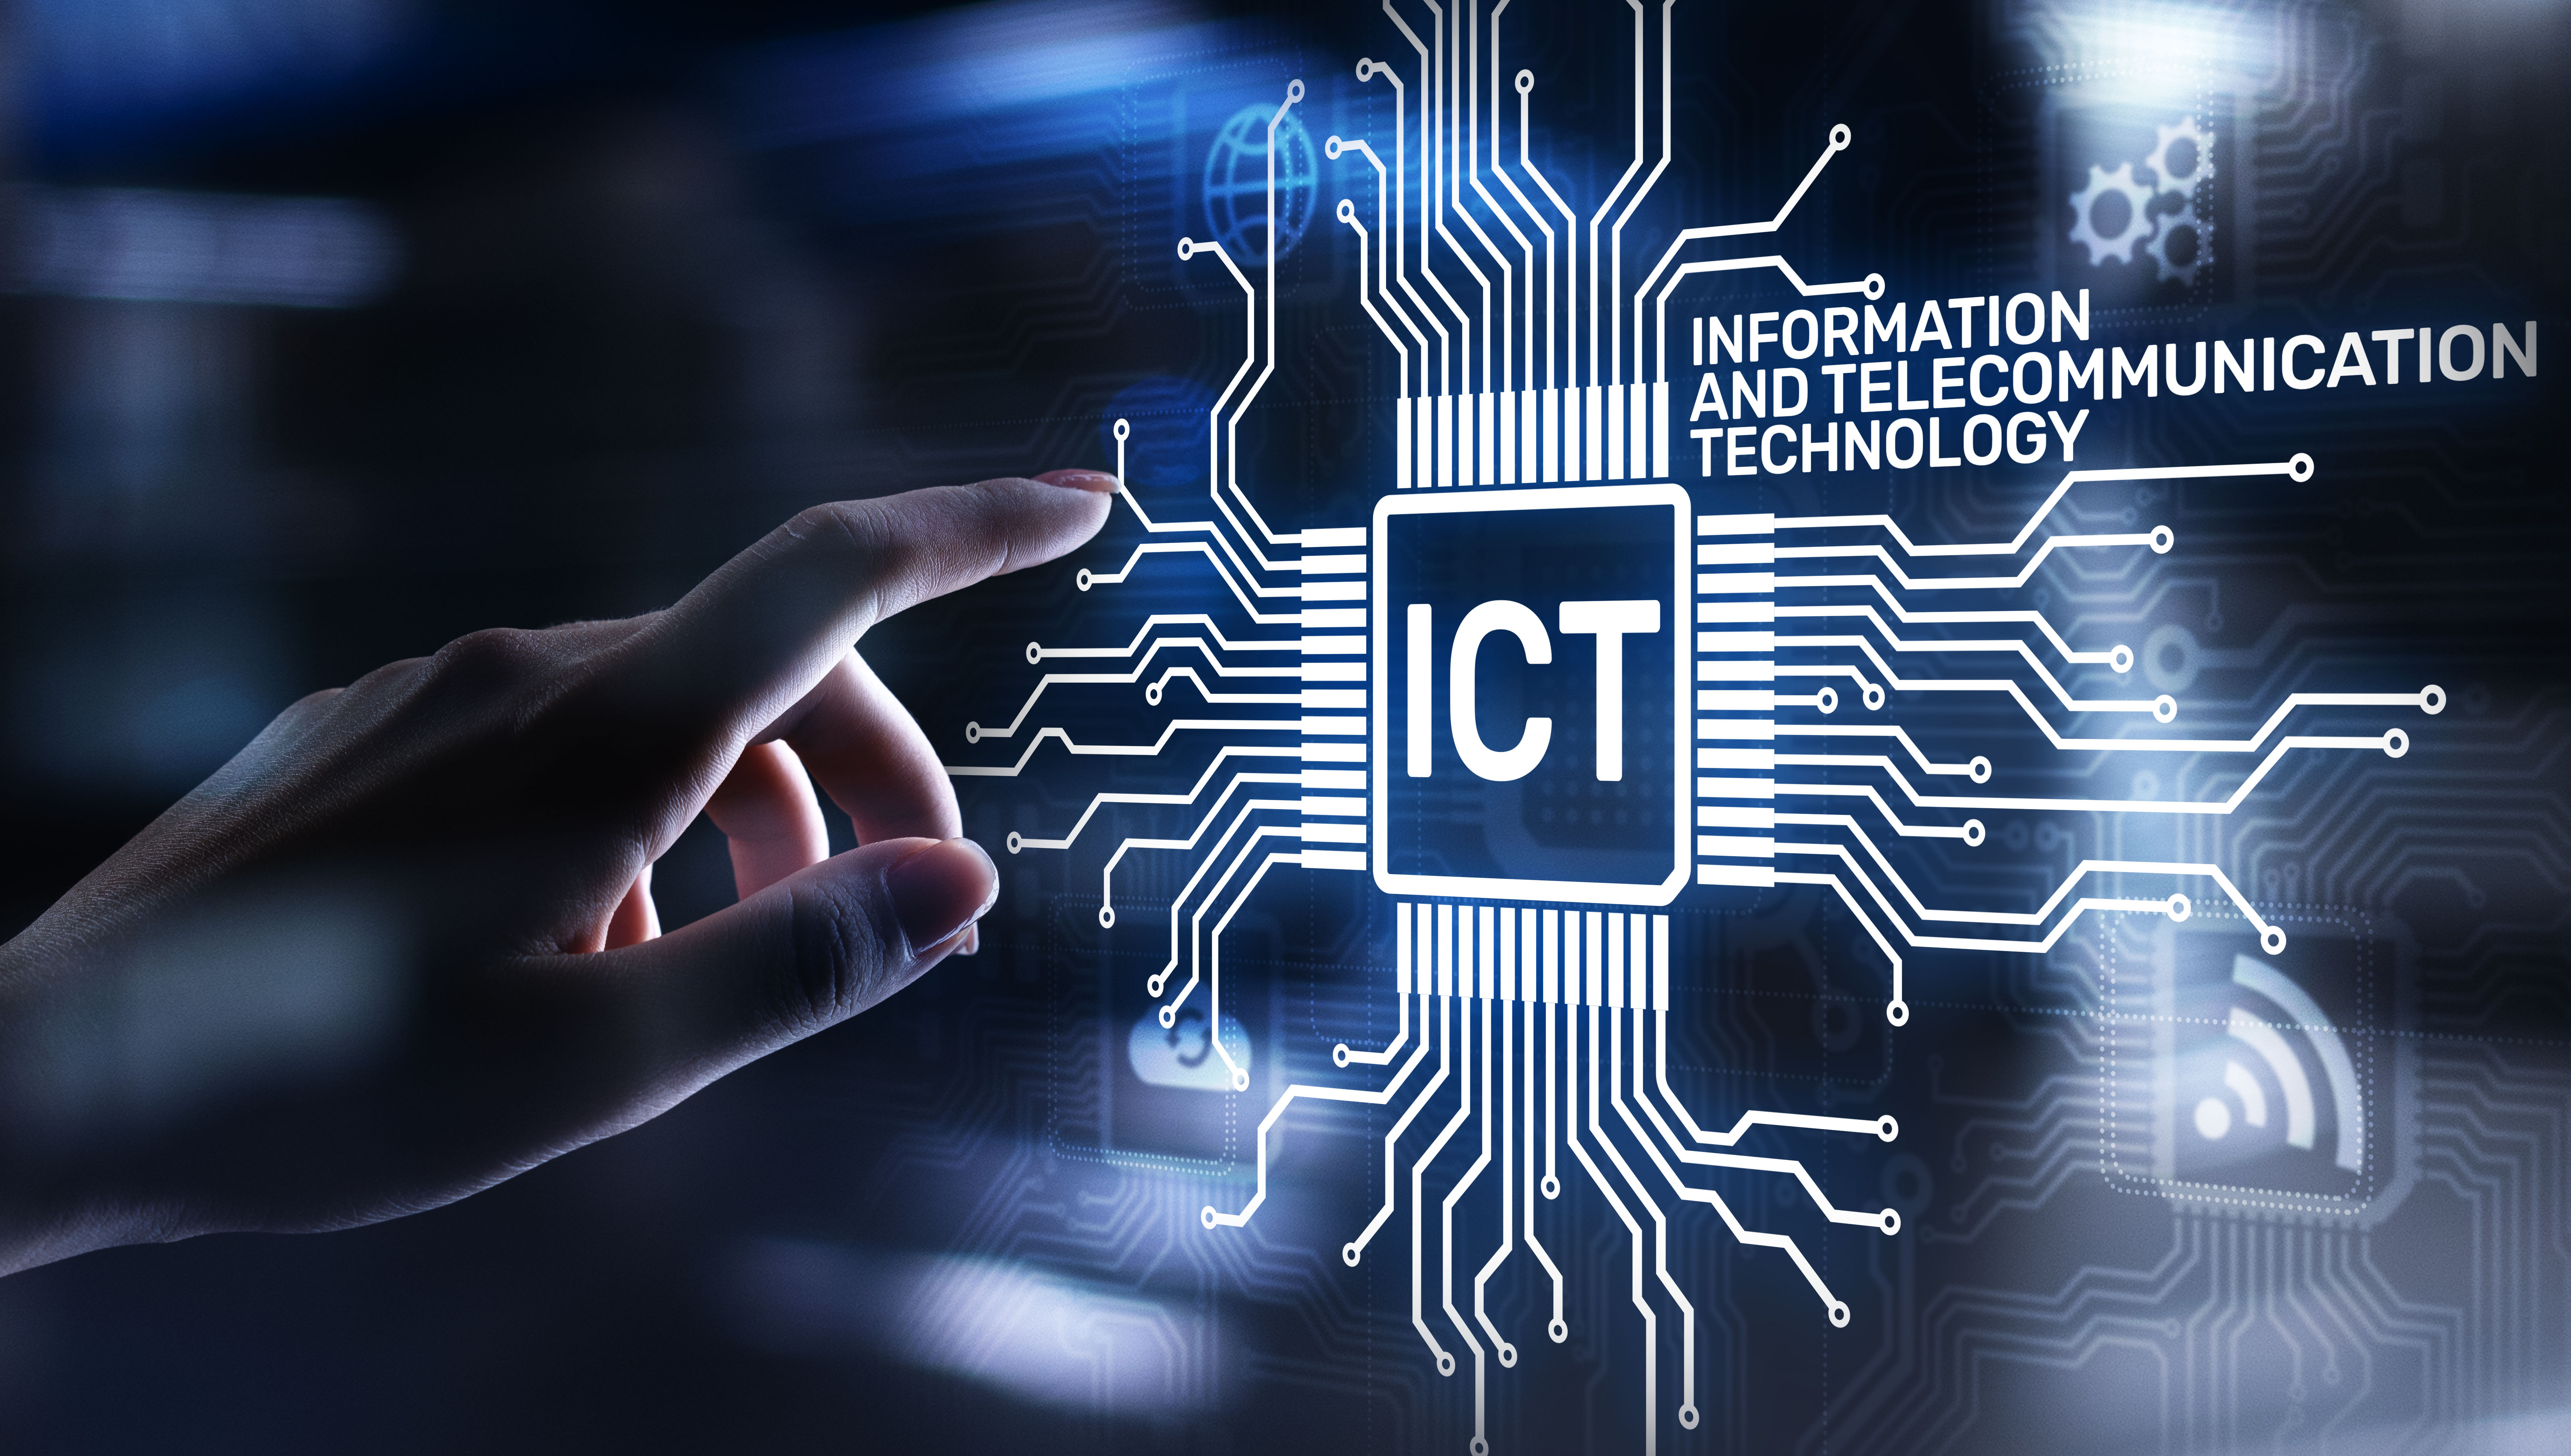 Fnanziati due nuovi percorsi IFTS per moda e filiera ICT (Fonte immagine Regione Toscana)